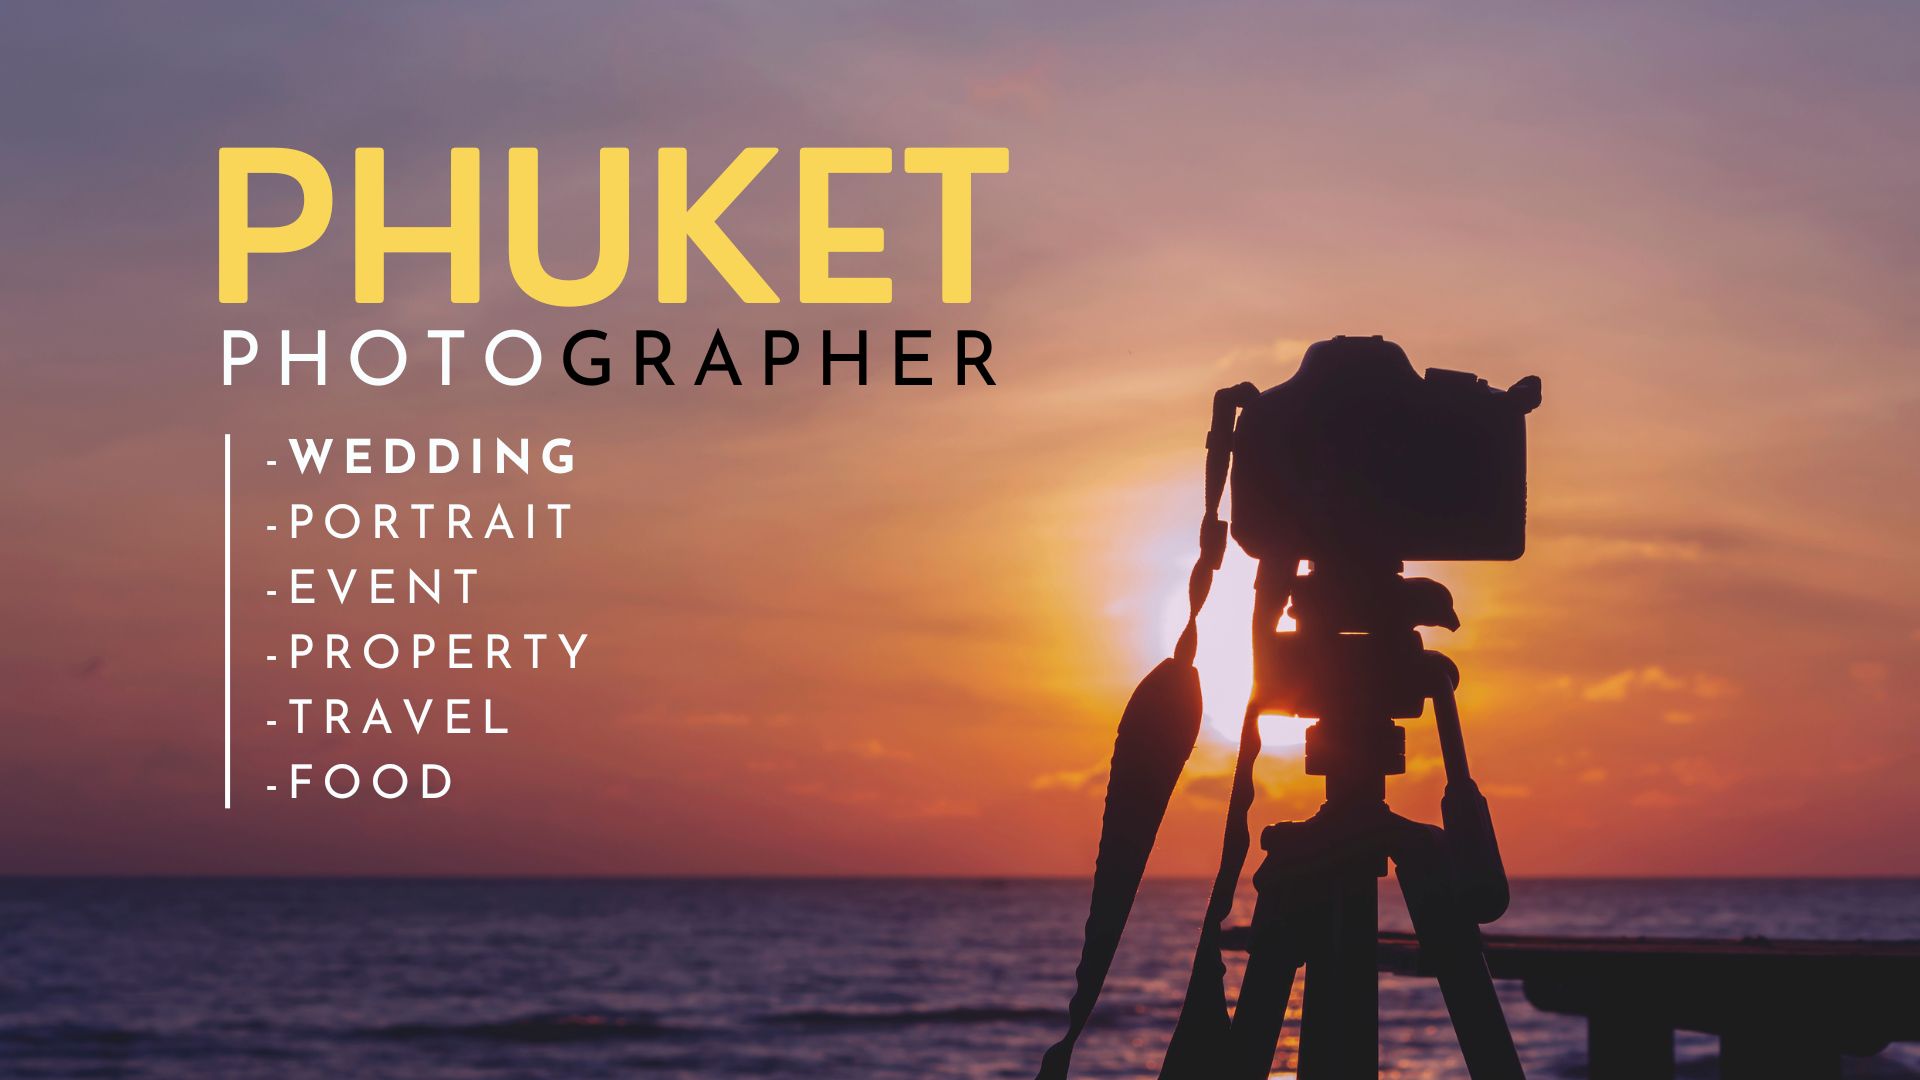 Phuket Photographer ช่างภาพภูเก็ต ผลงานดี มีคุณภาพ ราคาคุ้มค่า คุยง่าย กันเอง